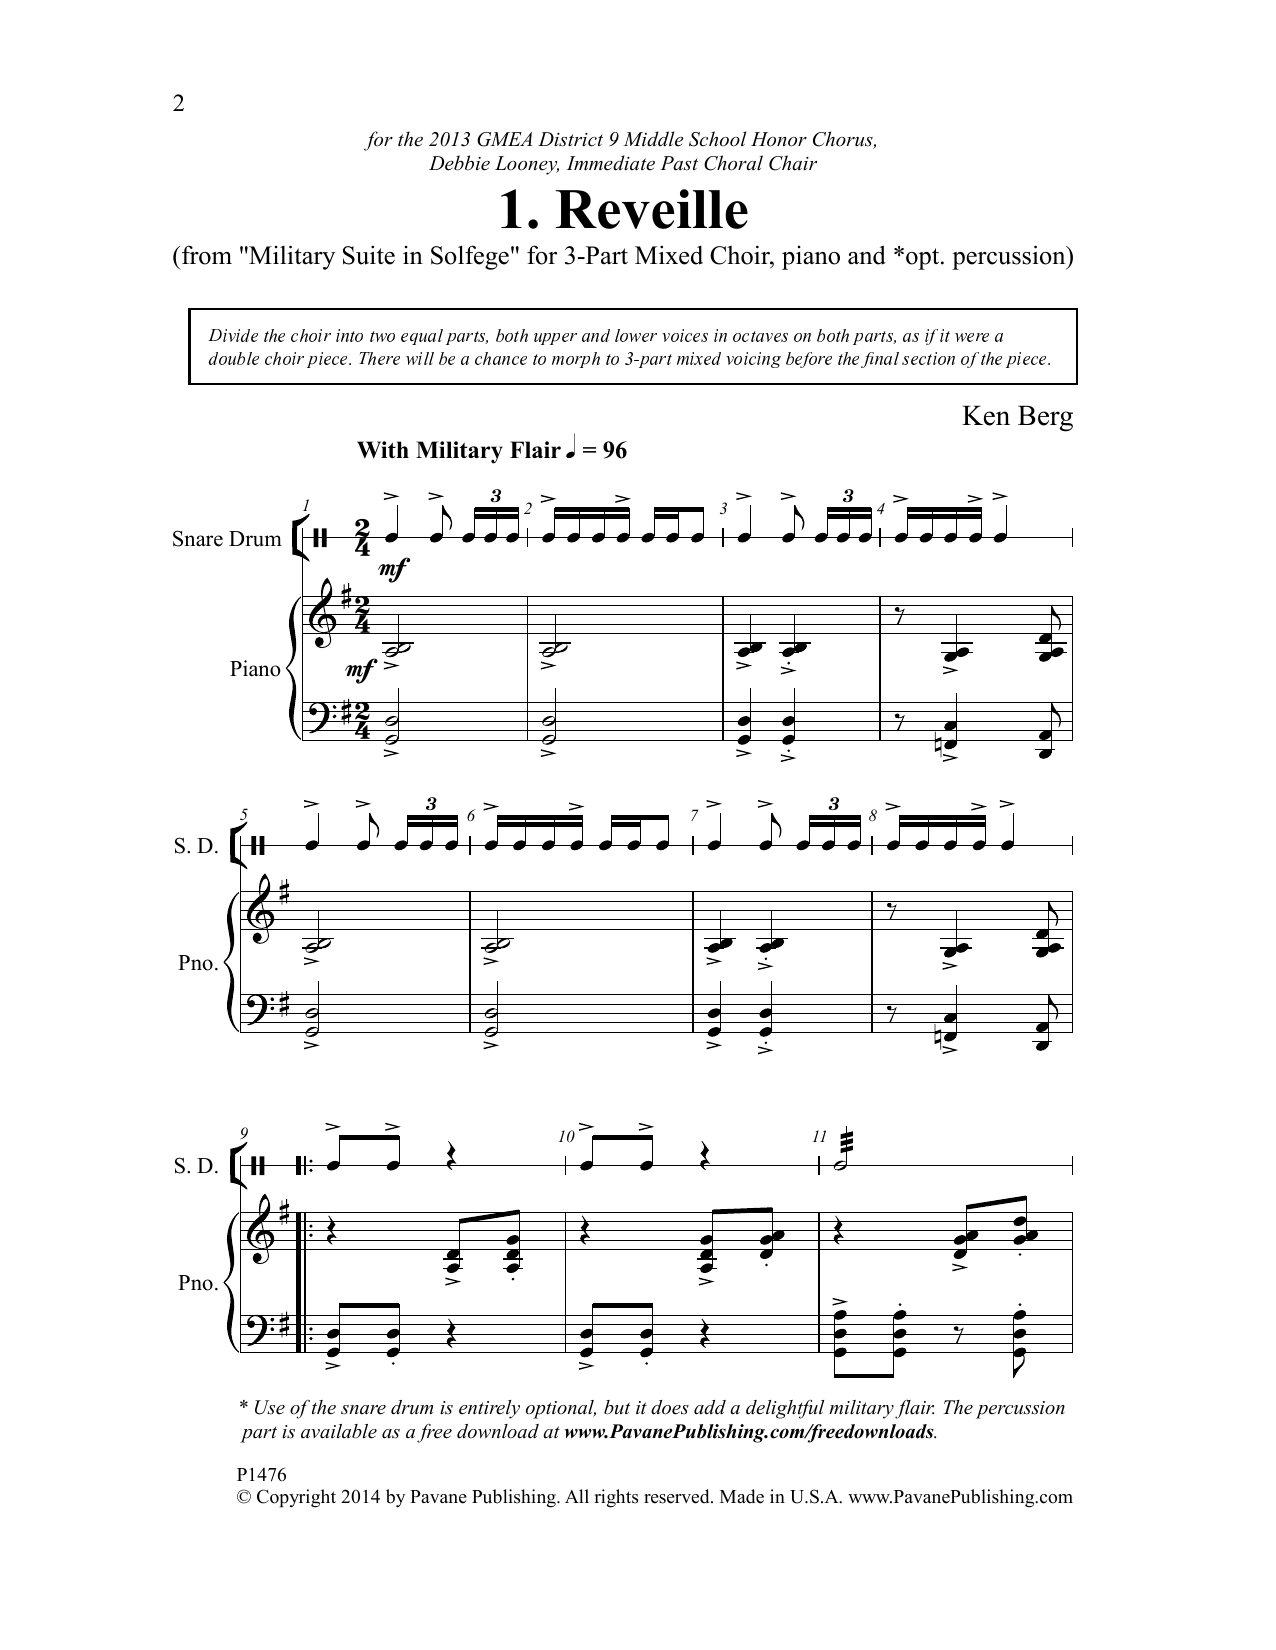 Download Ken Berg Reveille Sheet Music